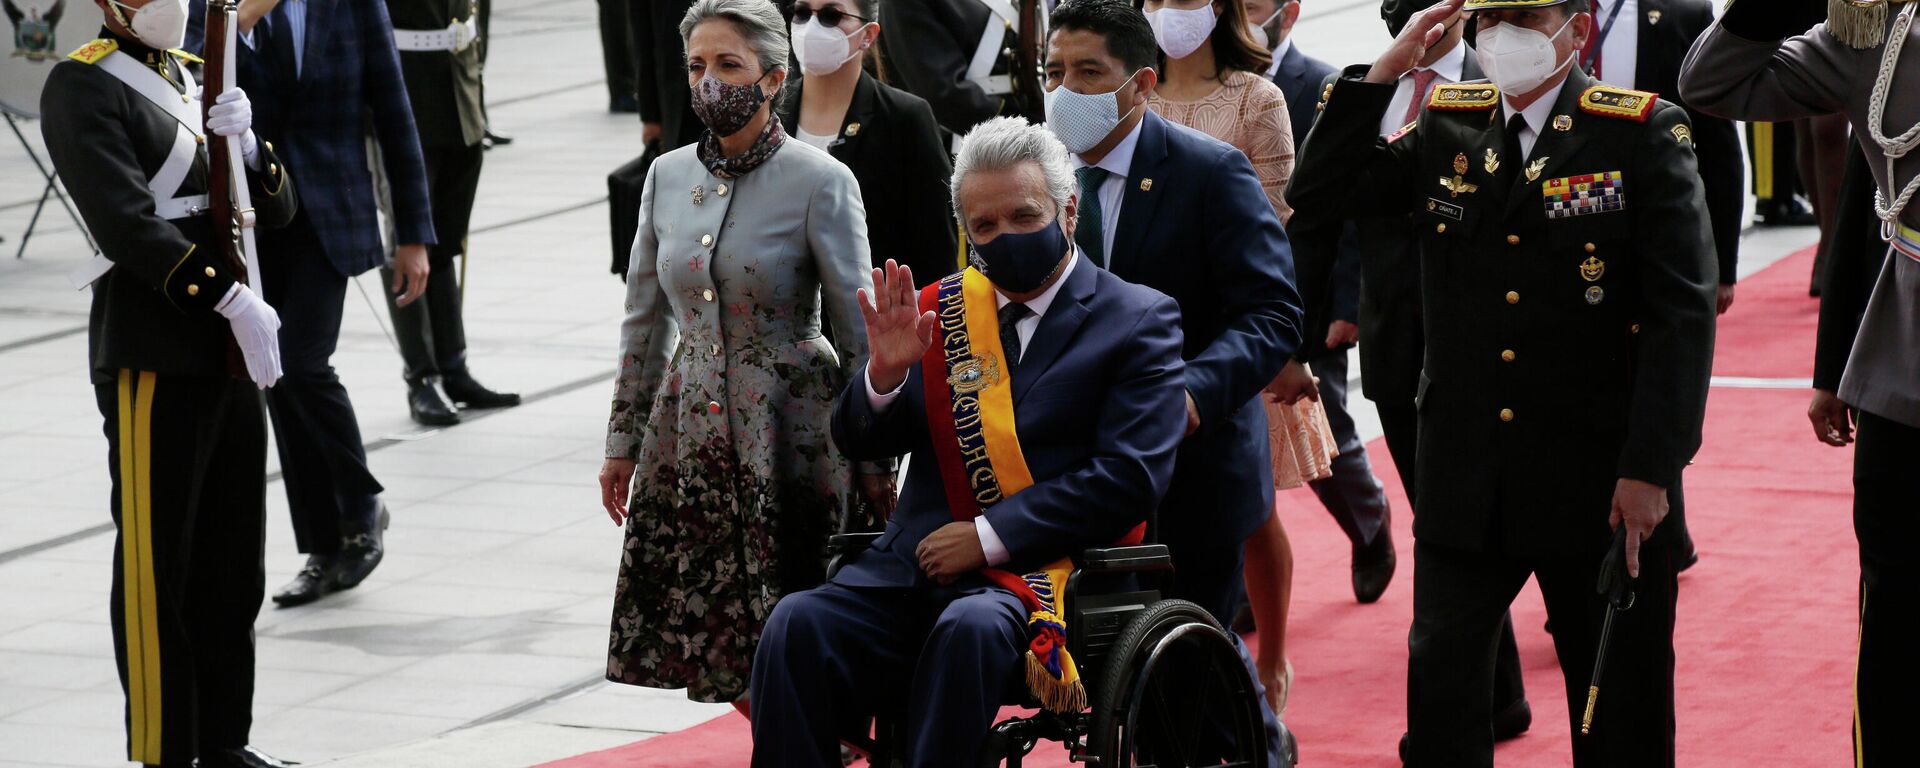 El presidente de Ecuador Lenín Moreno arribando a la ceremonia de asunción de su sucesor Guillermo Lasso - Sputnik Mundo, 1920, 24.05.2021